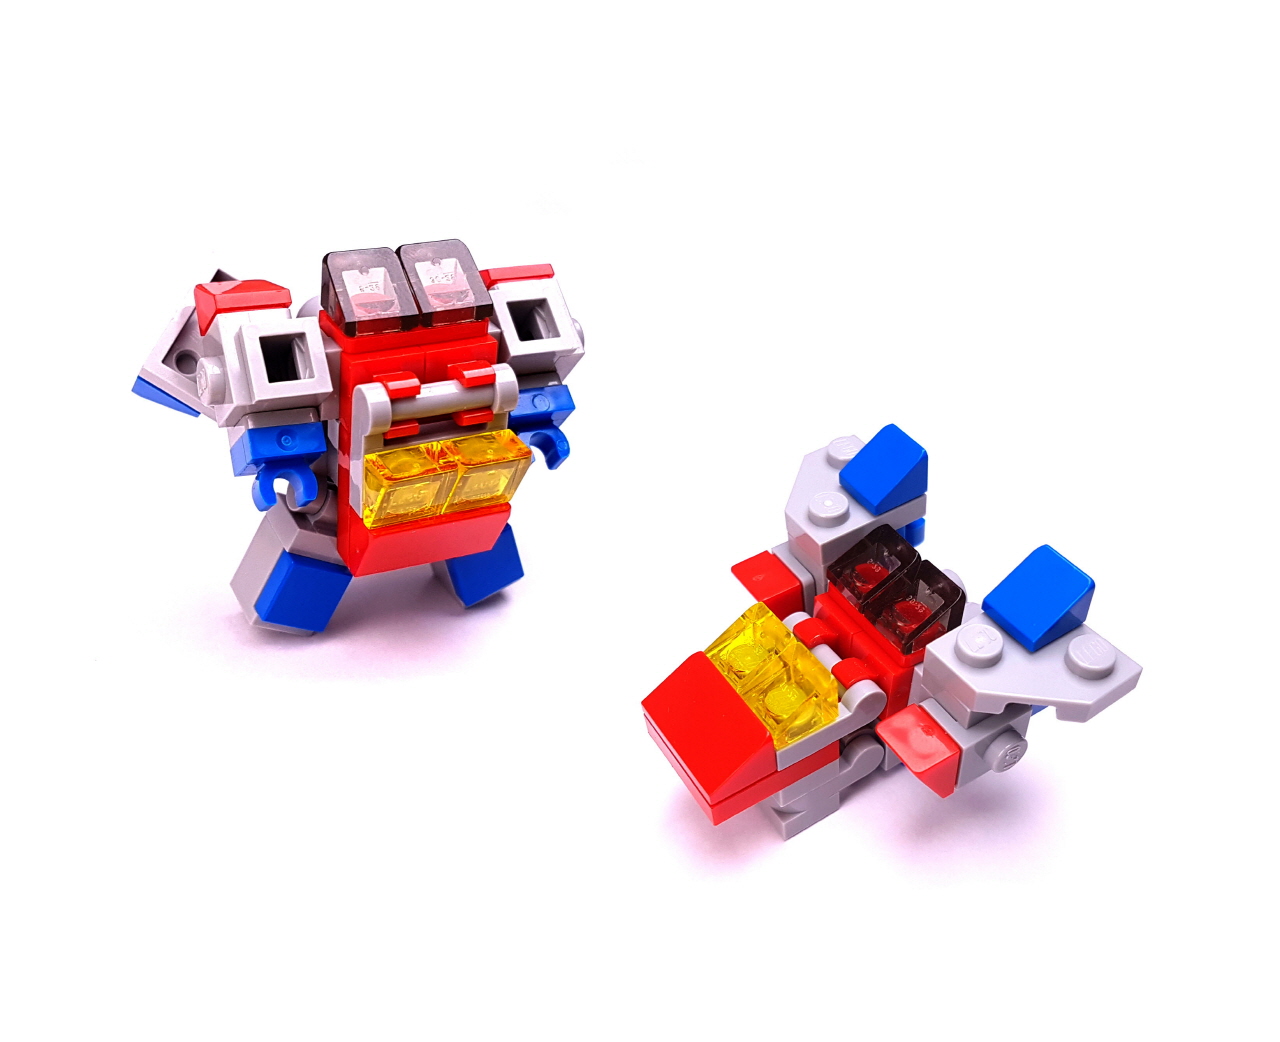 벨리보이 - 배가 볼록, 귀엽지만 초고속으로 날 수 있는 전투기 변신로봇 4 - 변신,변신로봇,레고변신로봇